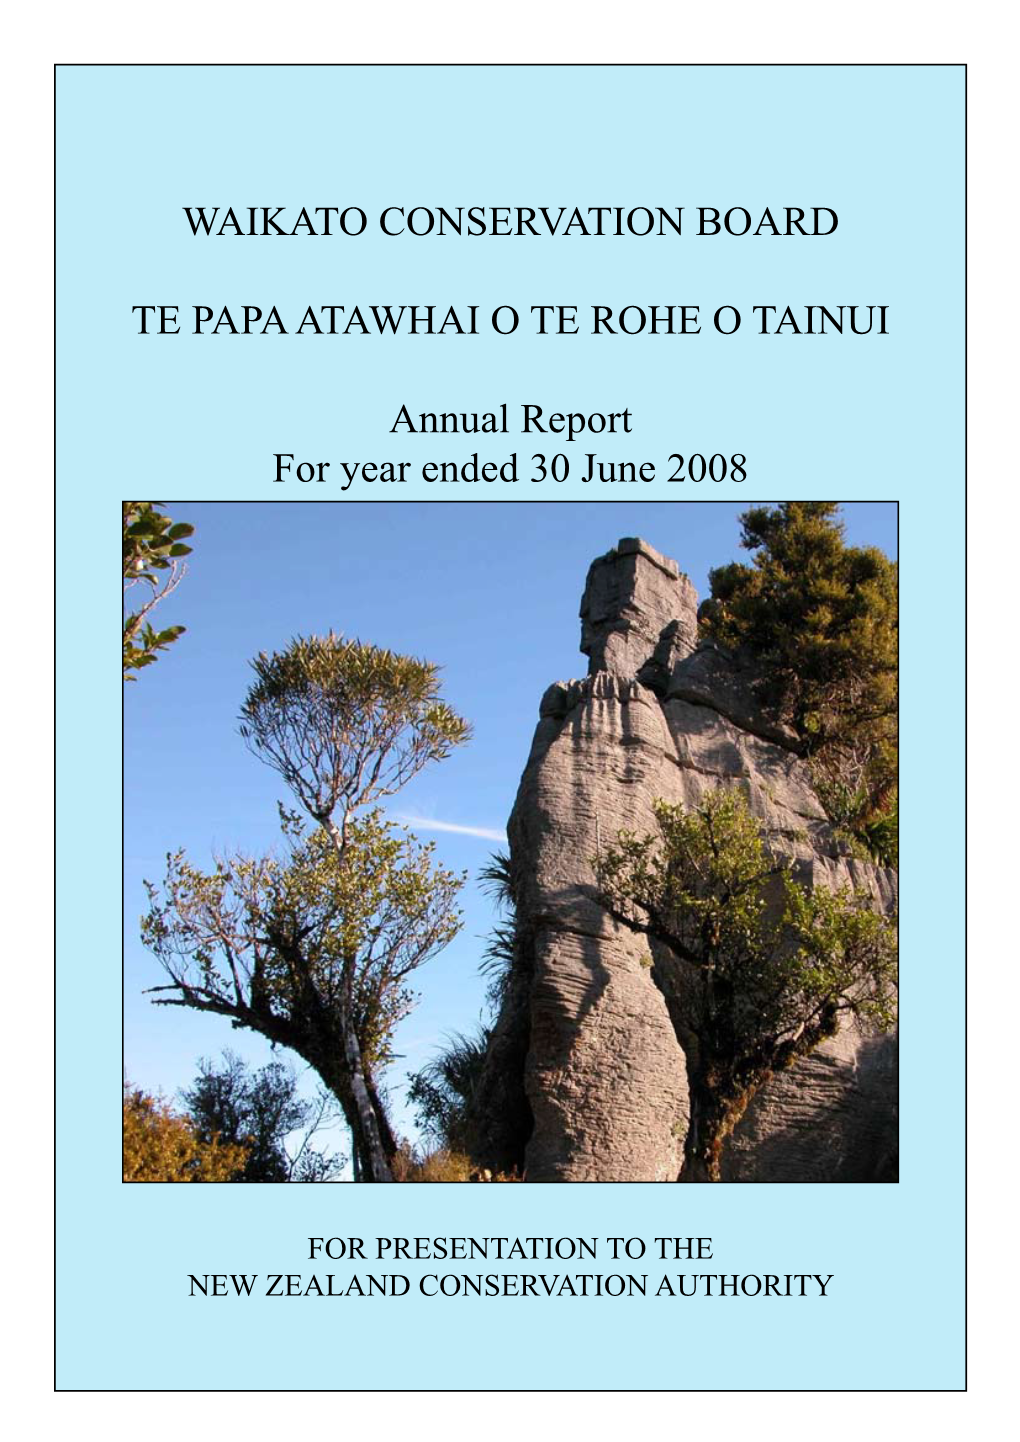 Waikato Conservation Board Annual Report 2007-2008